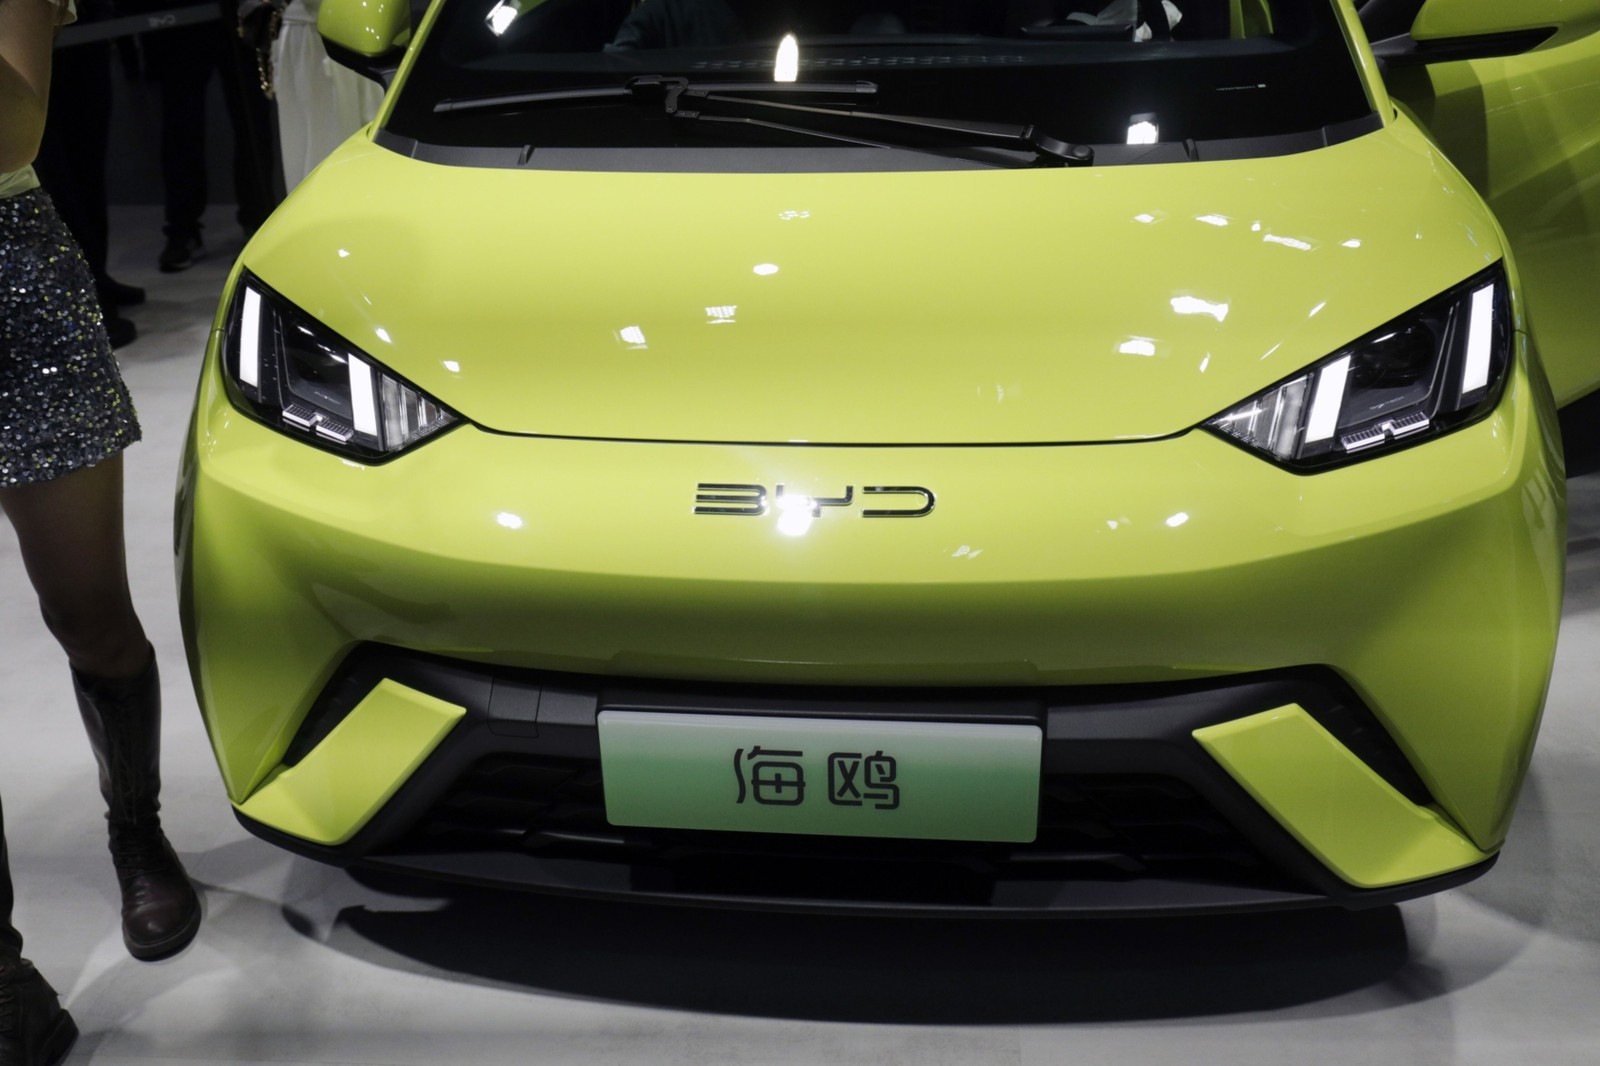 Seagull, carro elétrico da montadora chinesa BYD, que deve chegar ao Brasil por cerca de R$ 55 mil, é apresentado no salão do automóvel de Xangai. Qilai Shen/Bloomberg